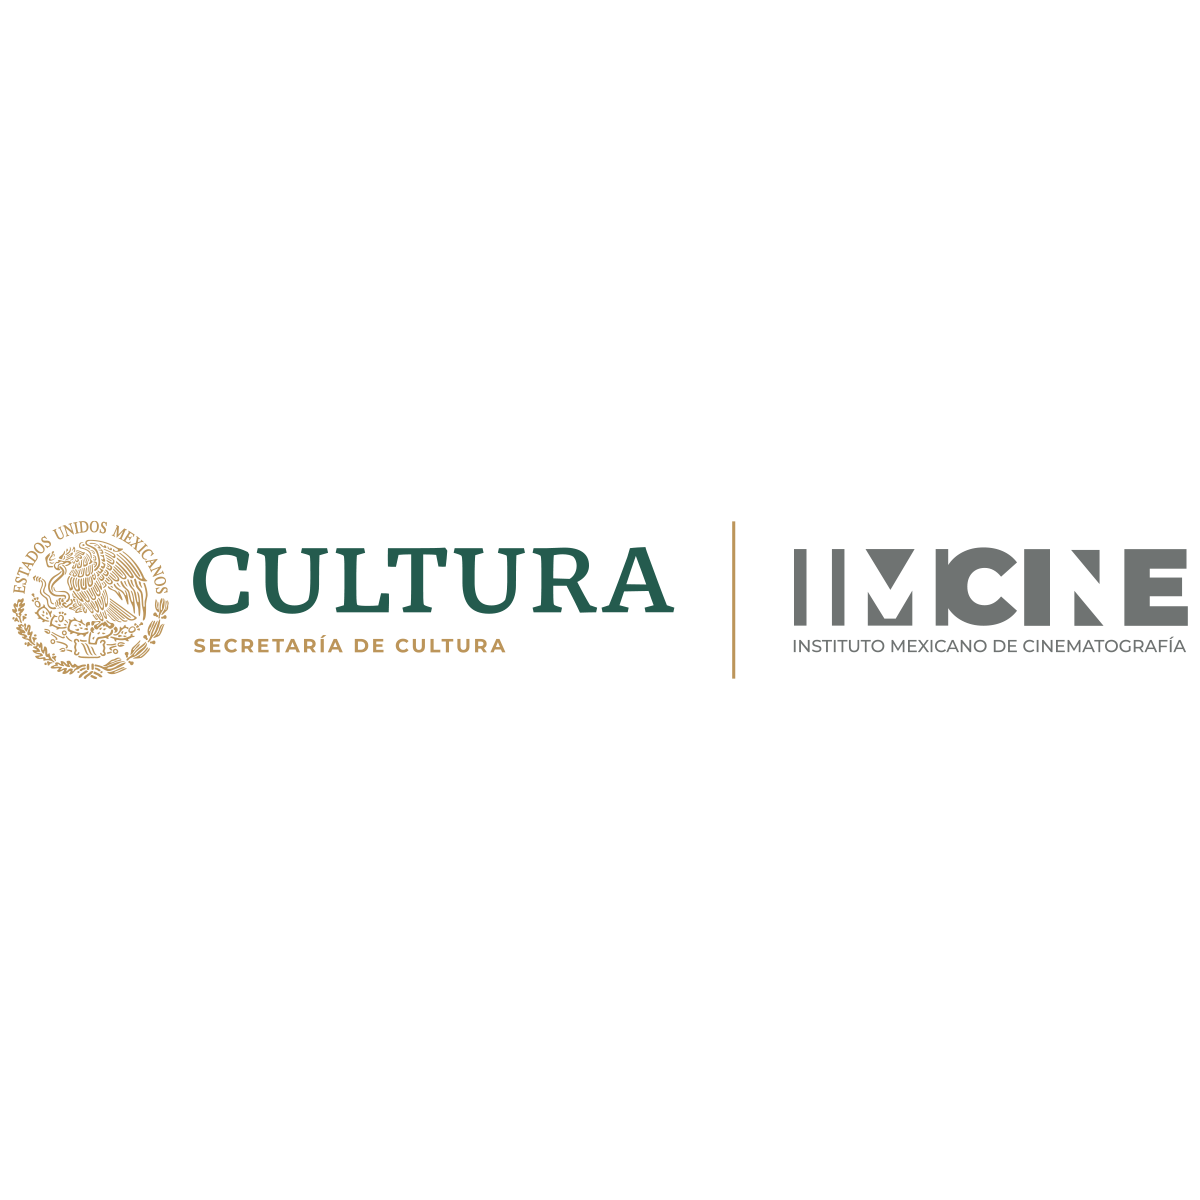 Secretaría de cultura - Instituto mexicano de cinematografía